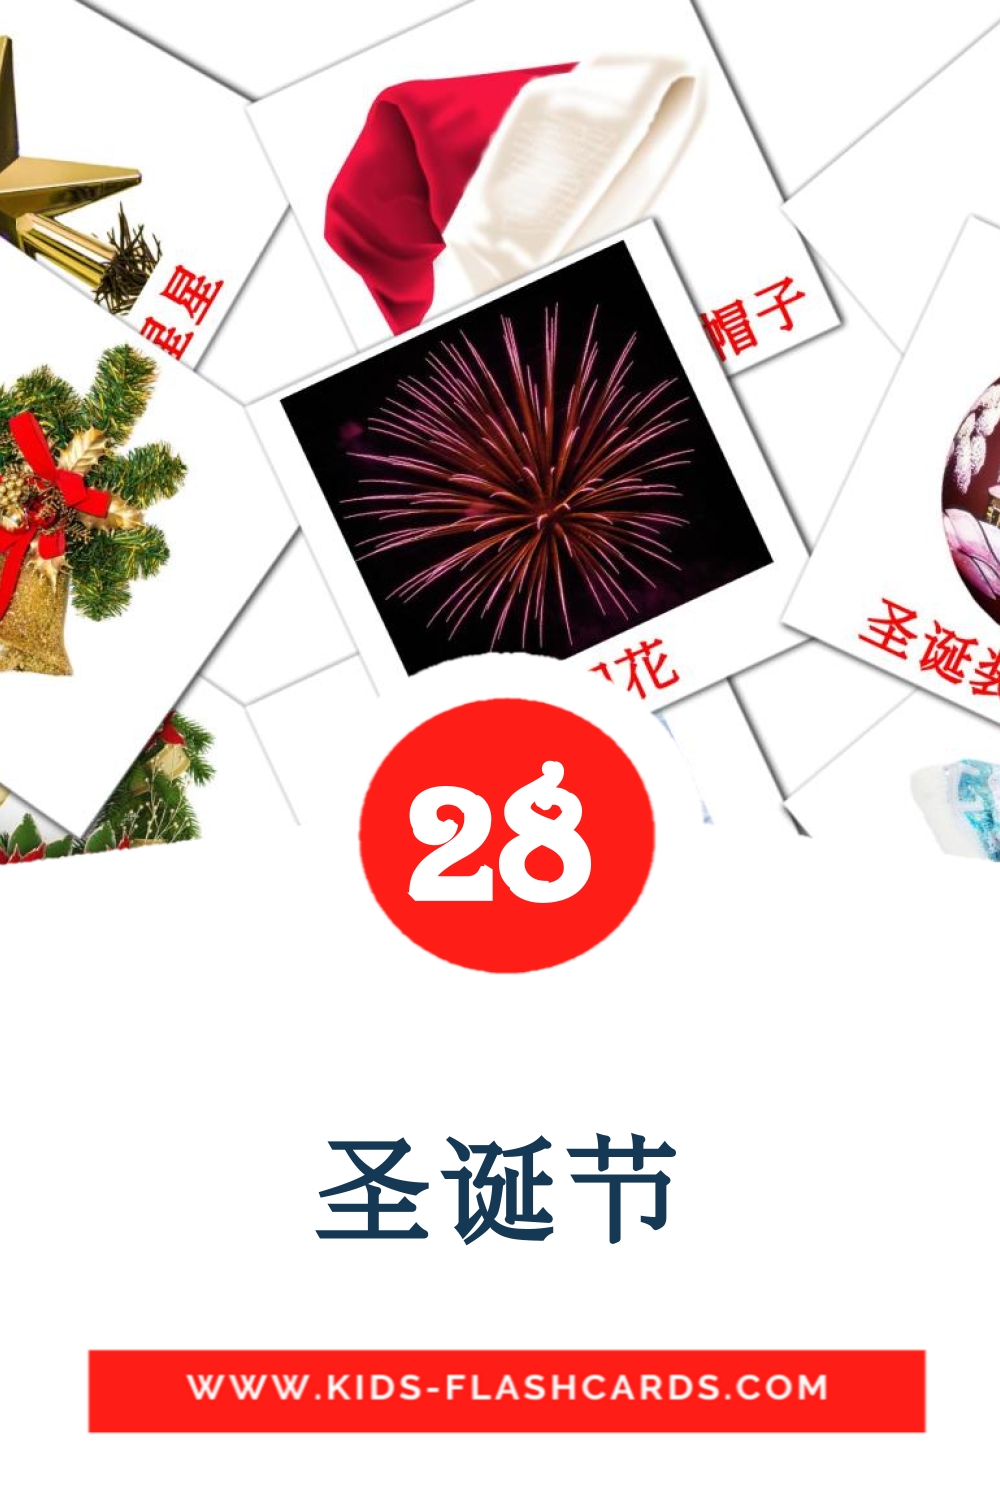 28 tarjetas didacticas de 圣诞节 para el jardín de infancia en chino(simplificado)